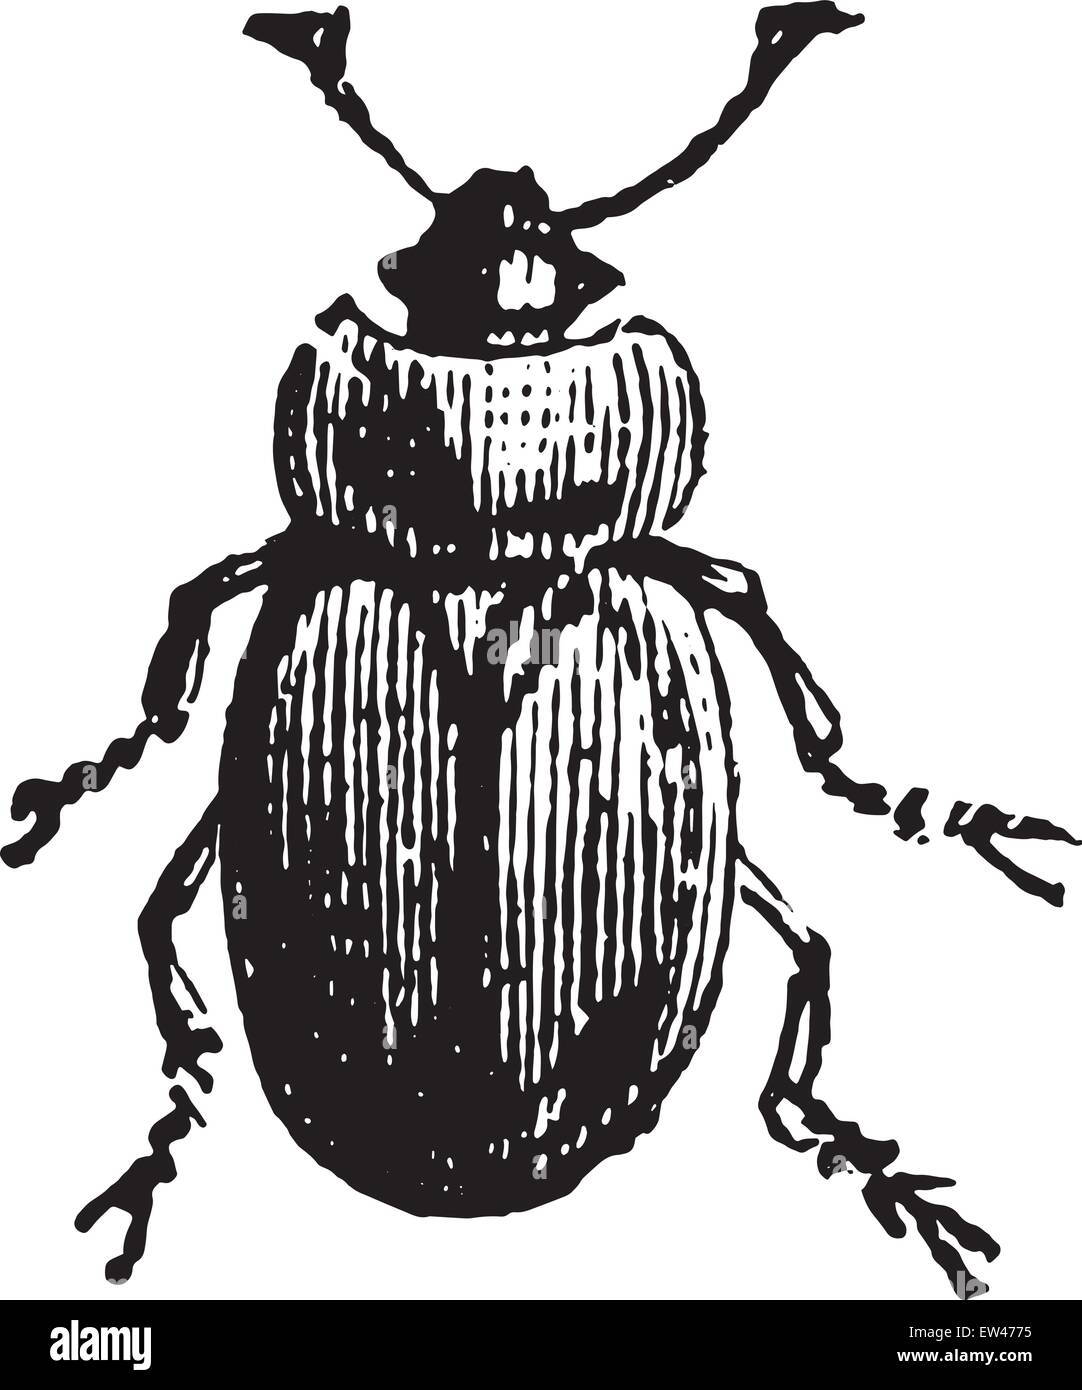 Sap beetle, vintage engraved illustration. Stock Vector